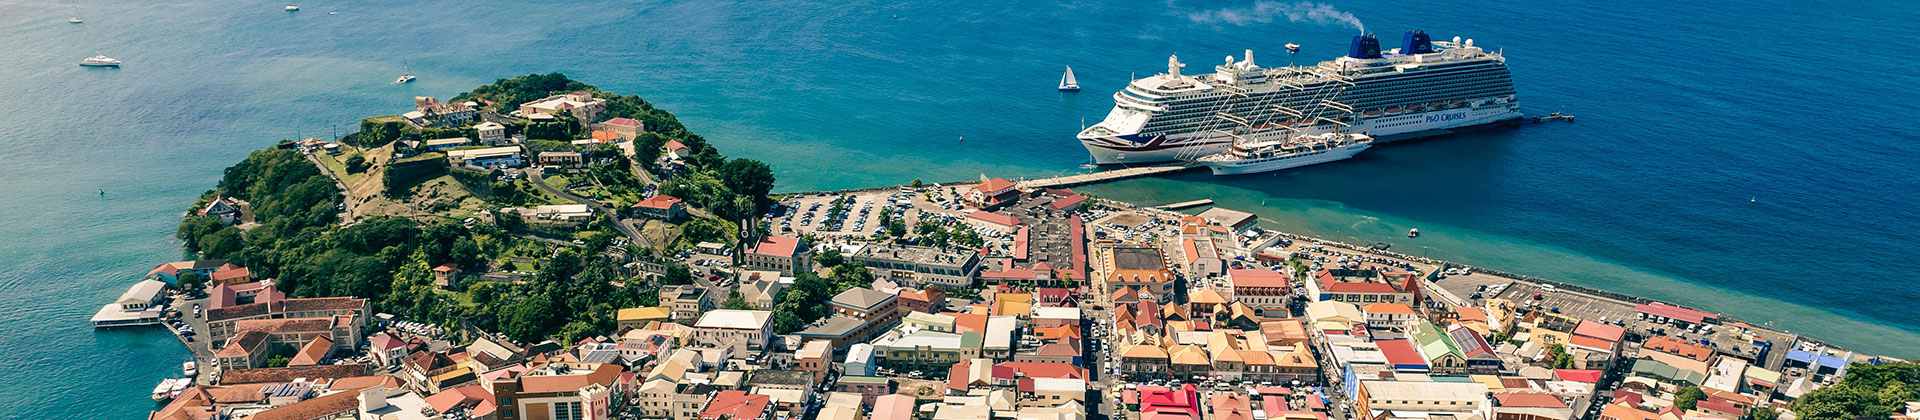 Town of St. George’s | Grenada, West Indies